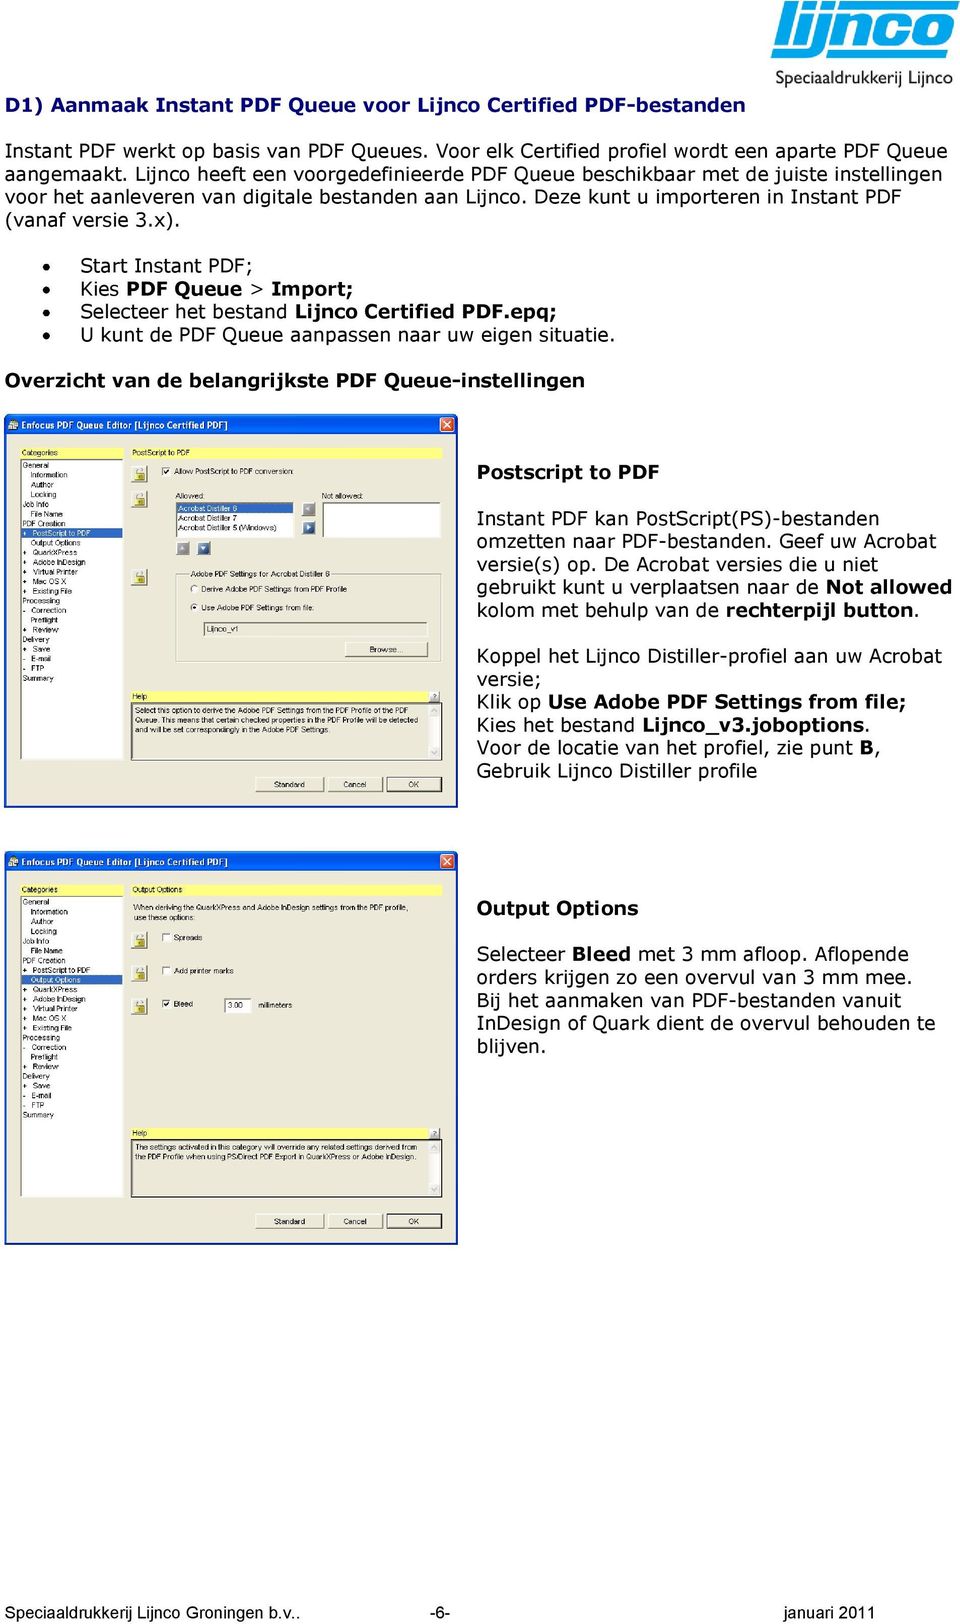 Start Instant PDF; Kies PDF Queue > Import; Selecteer het bestand Lijnco Certified PDF.epq; U kunt de PDF Queue aanpassen naar uw eigen situatie.